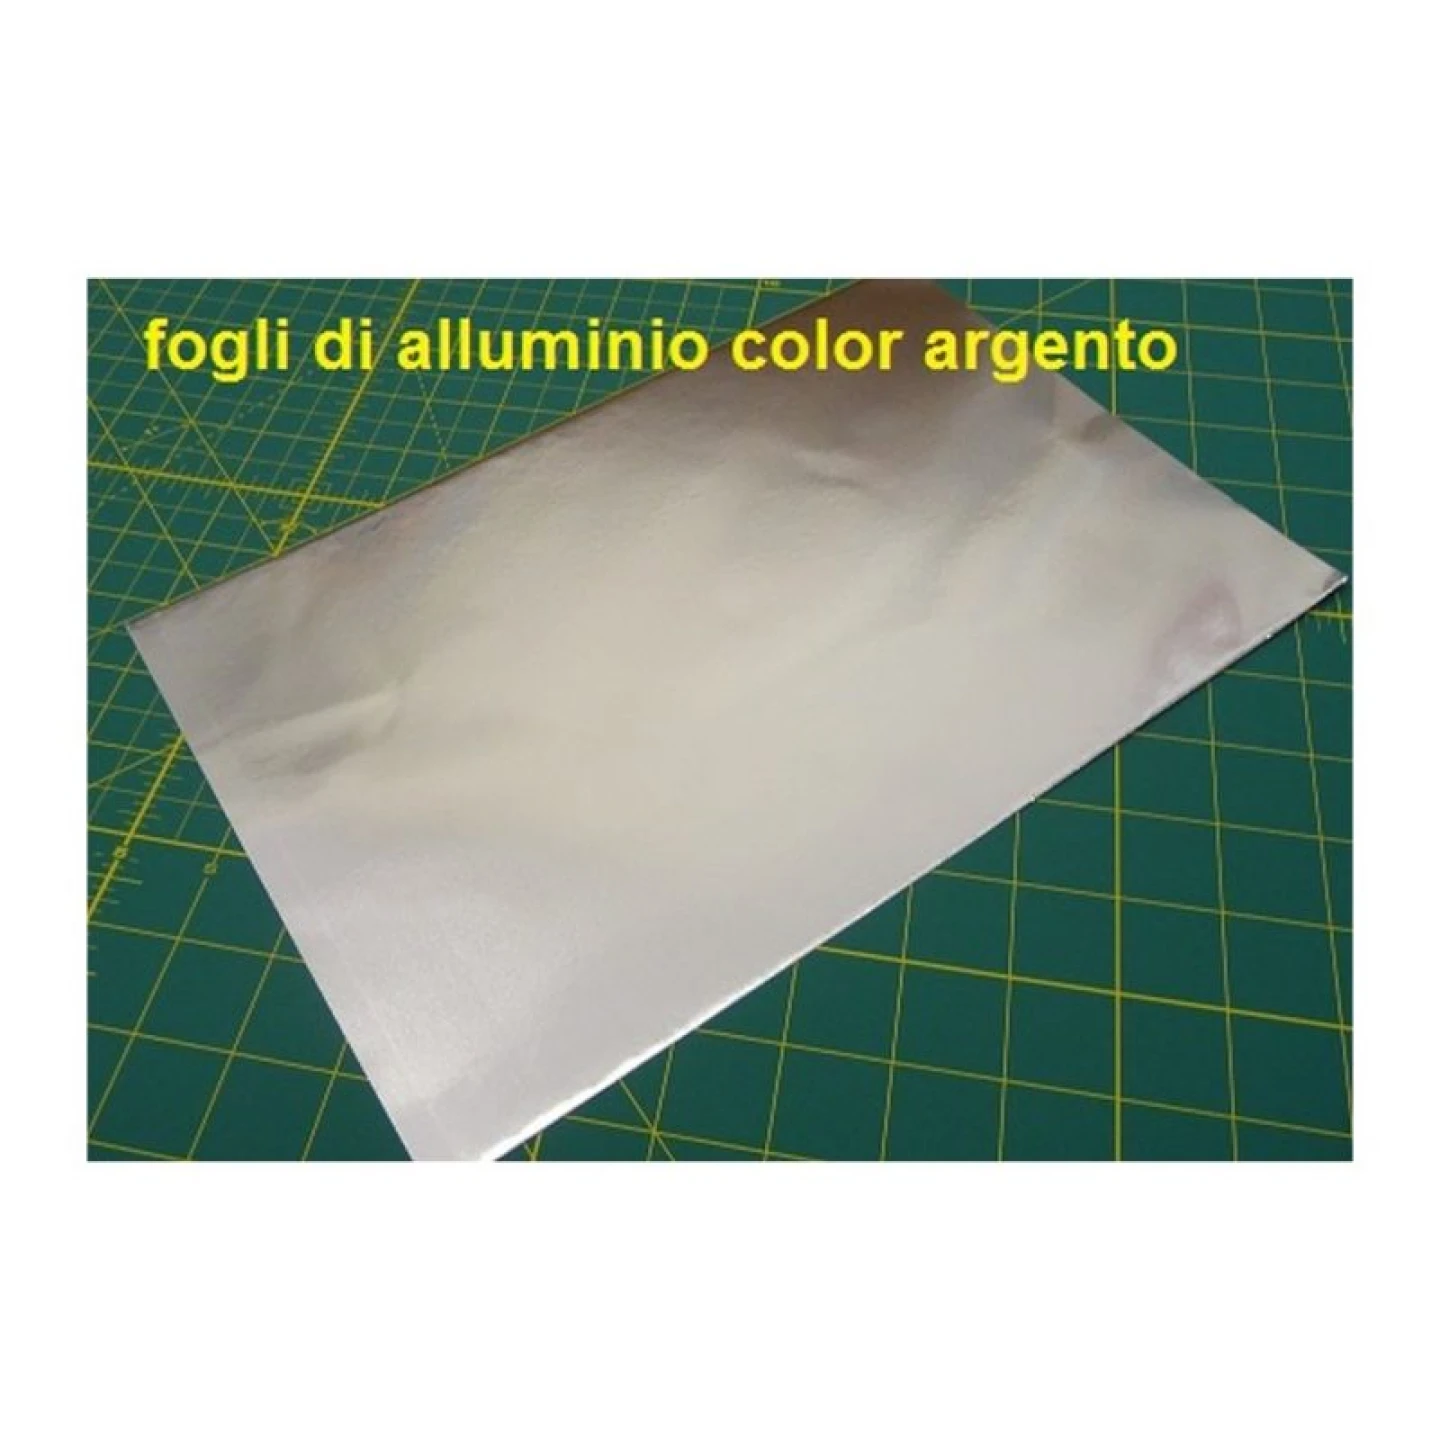 Fogli di alluminio color oro spessore 0.15 mm. - Utensileria Revelli